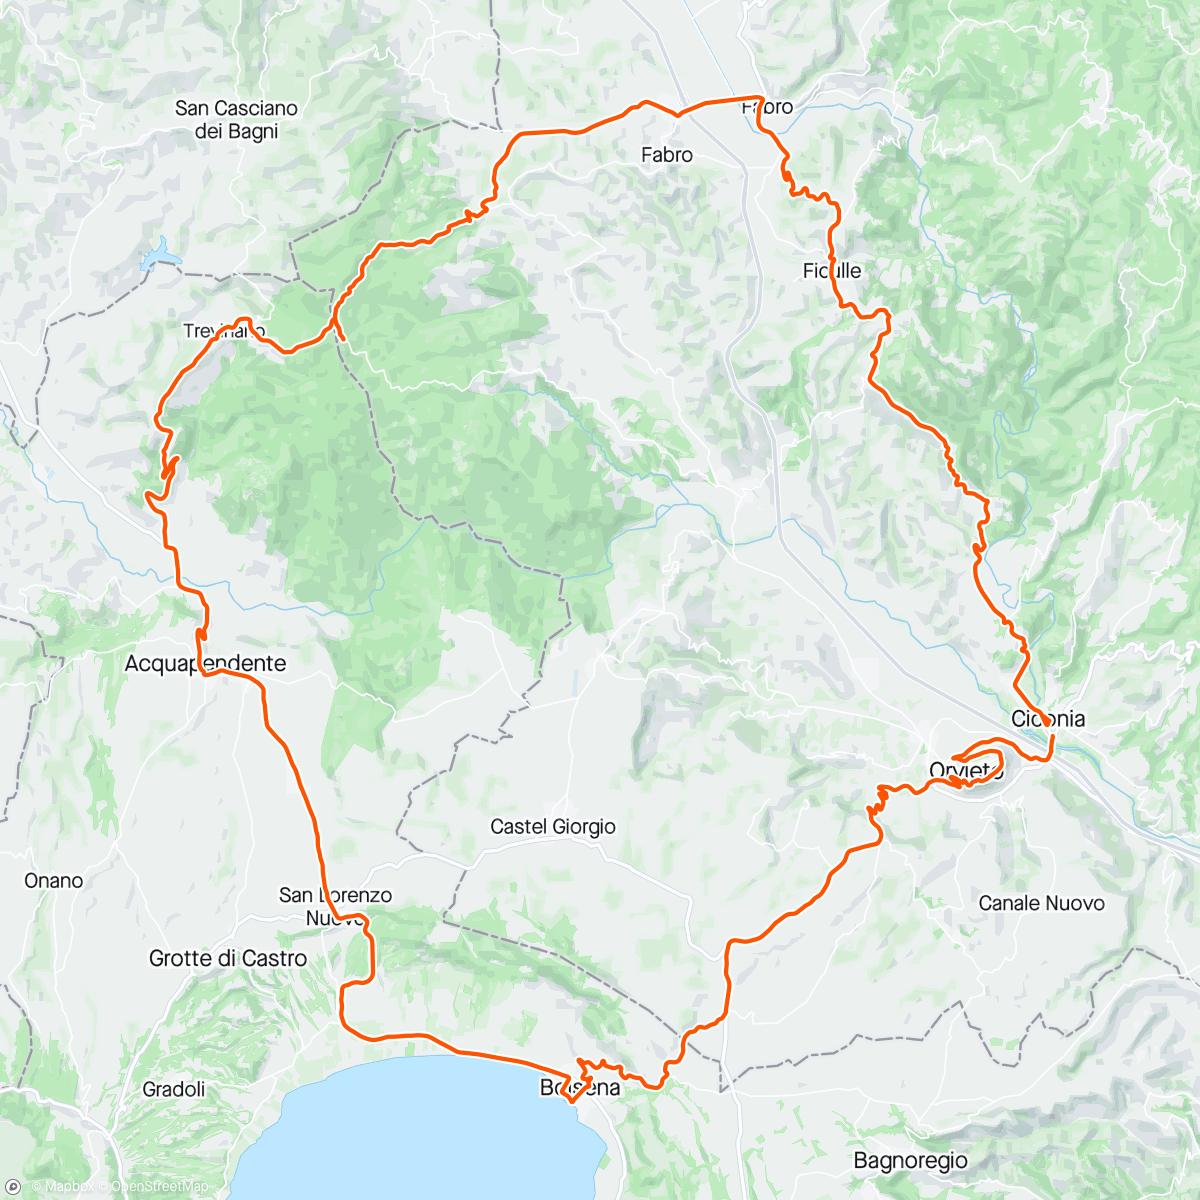 Mapa da atividade, Serie B: Orvieto - Fabro - Aquapendente -  Bolsena